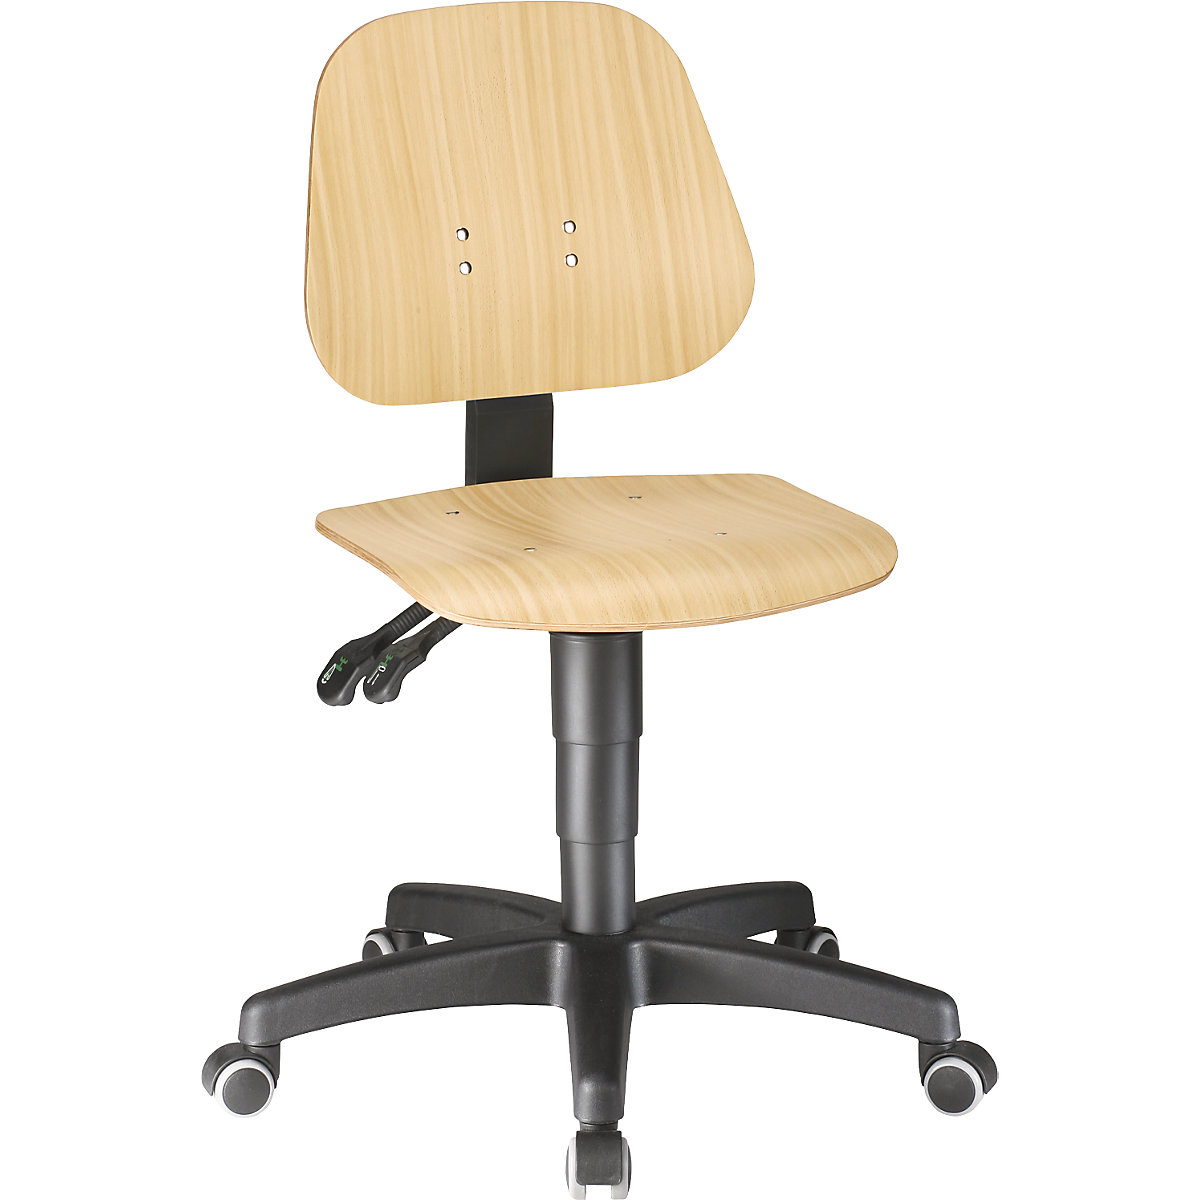 Okretni radni stolac – bimos, s namještanjem visine pomoću plinske opruge, slojevito drvo bukve, s kotačima-1